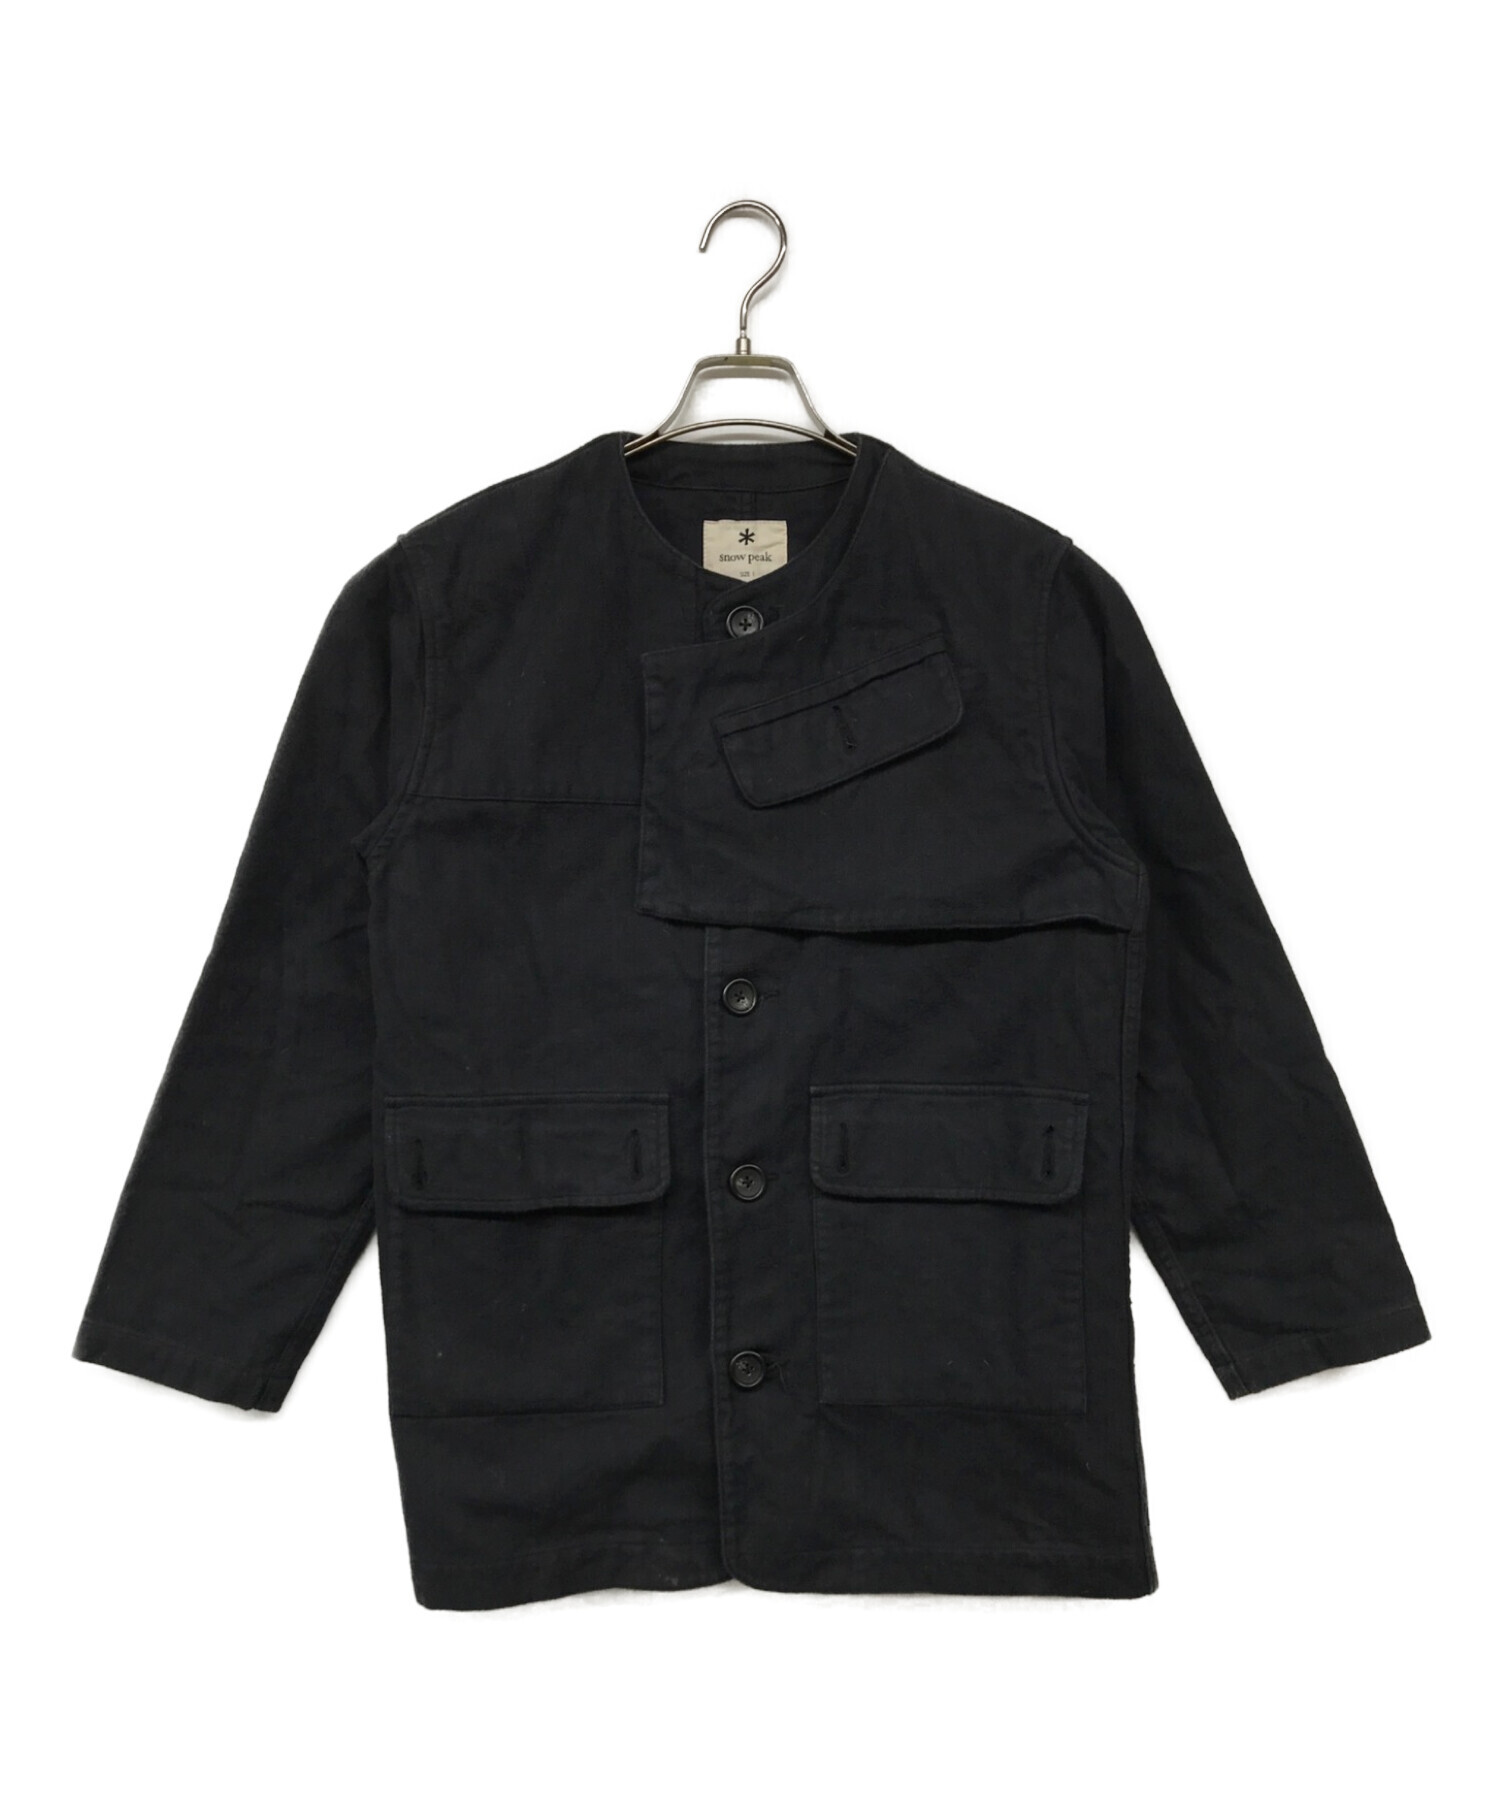 39600円Snow peak Army Cloth Jacket Sサイズ - ノーカラージャケット